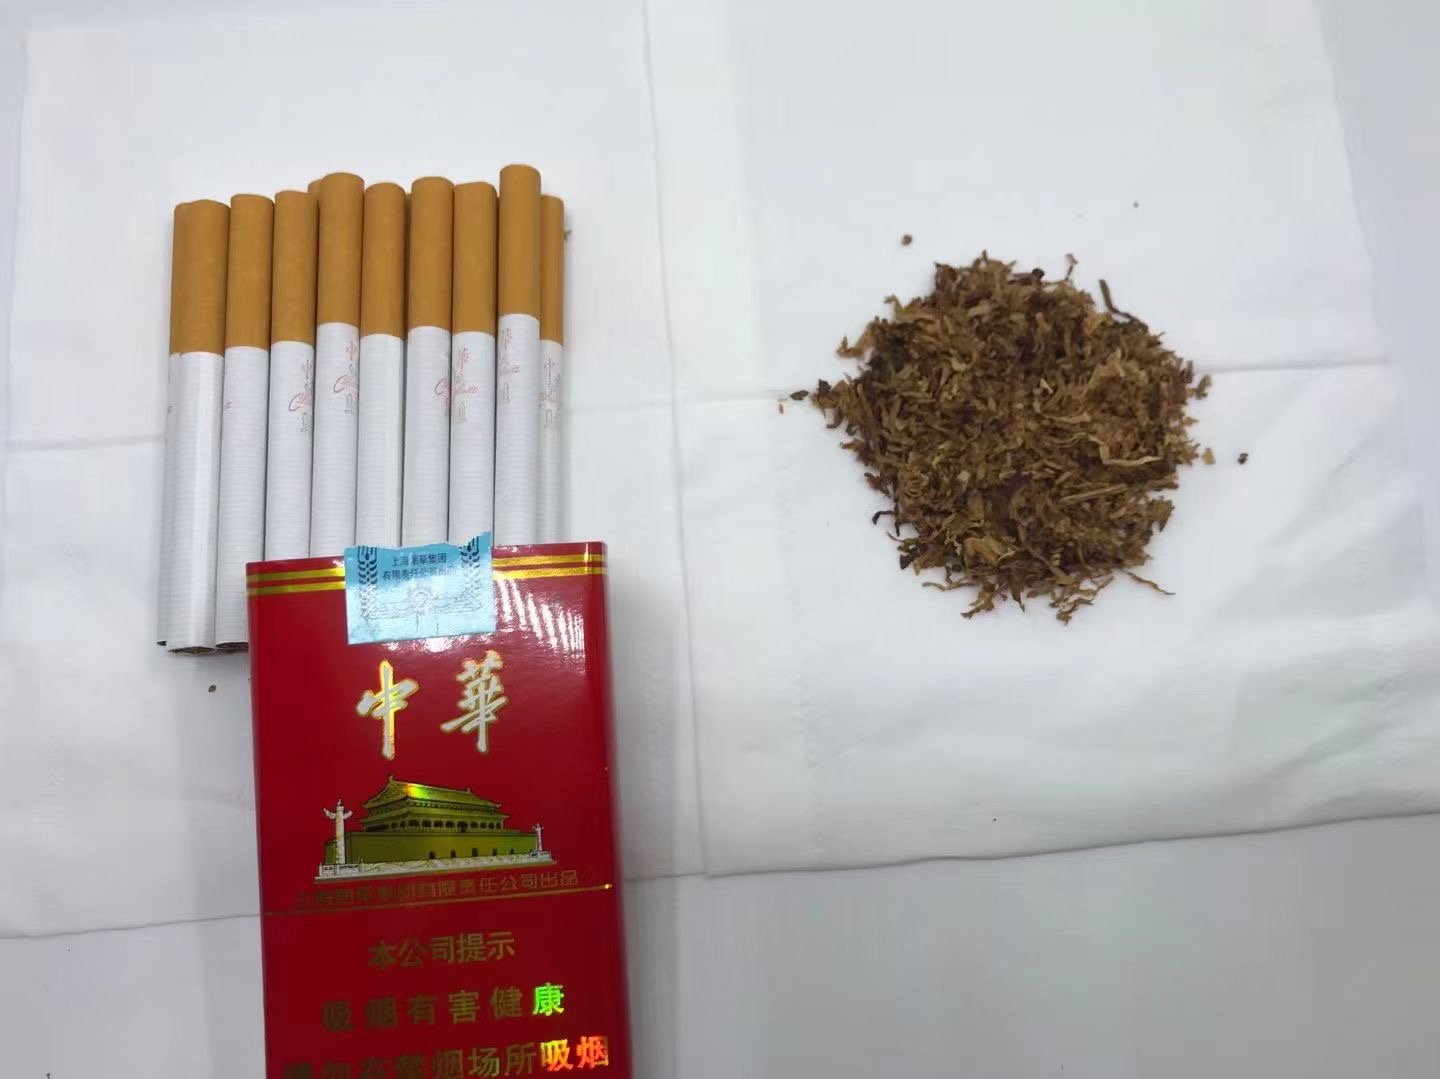 越南烟代工厂微信_越南代工香烟联系方式_越南代工烟